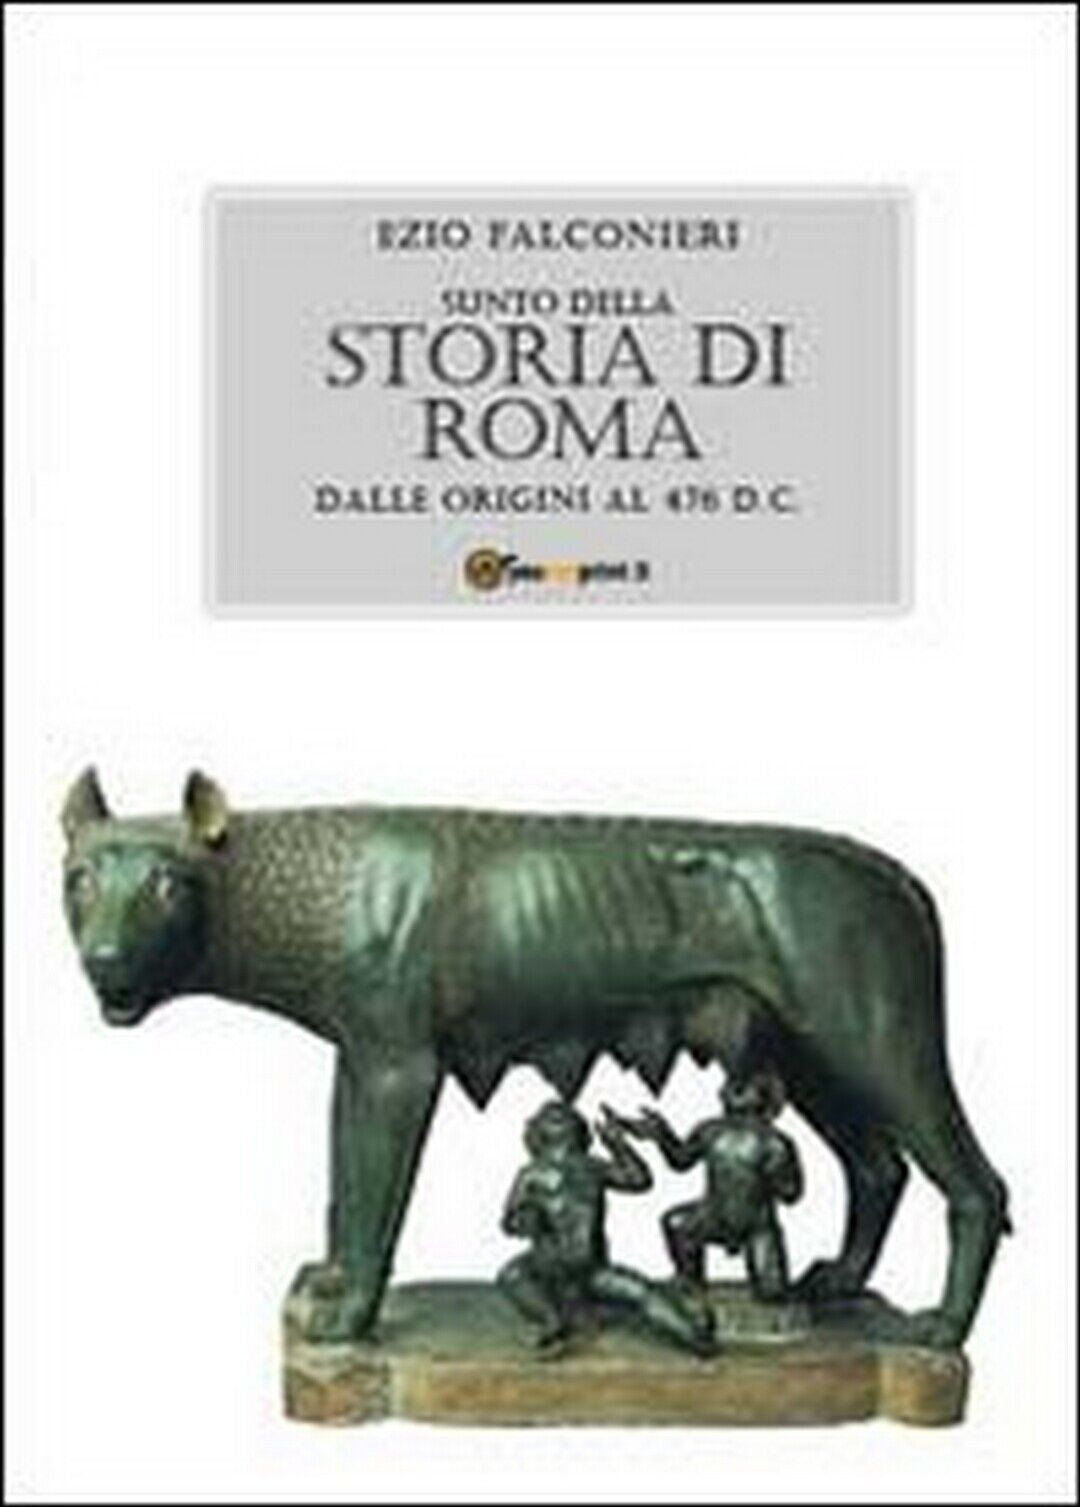 Sunto della storia di Roma. Dalle origini al 476 d.C.  di Ezio Falconieri,  2011